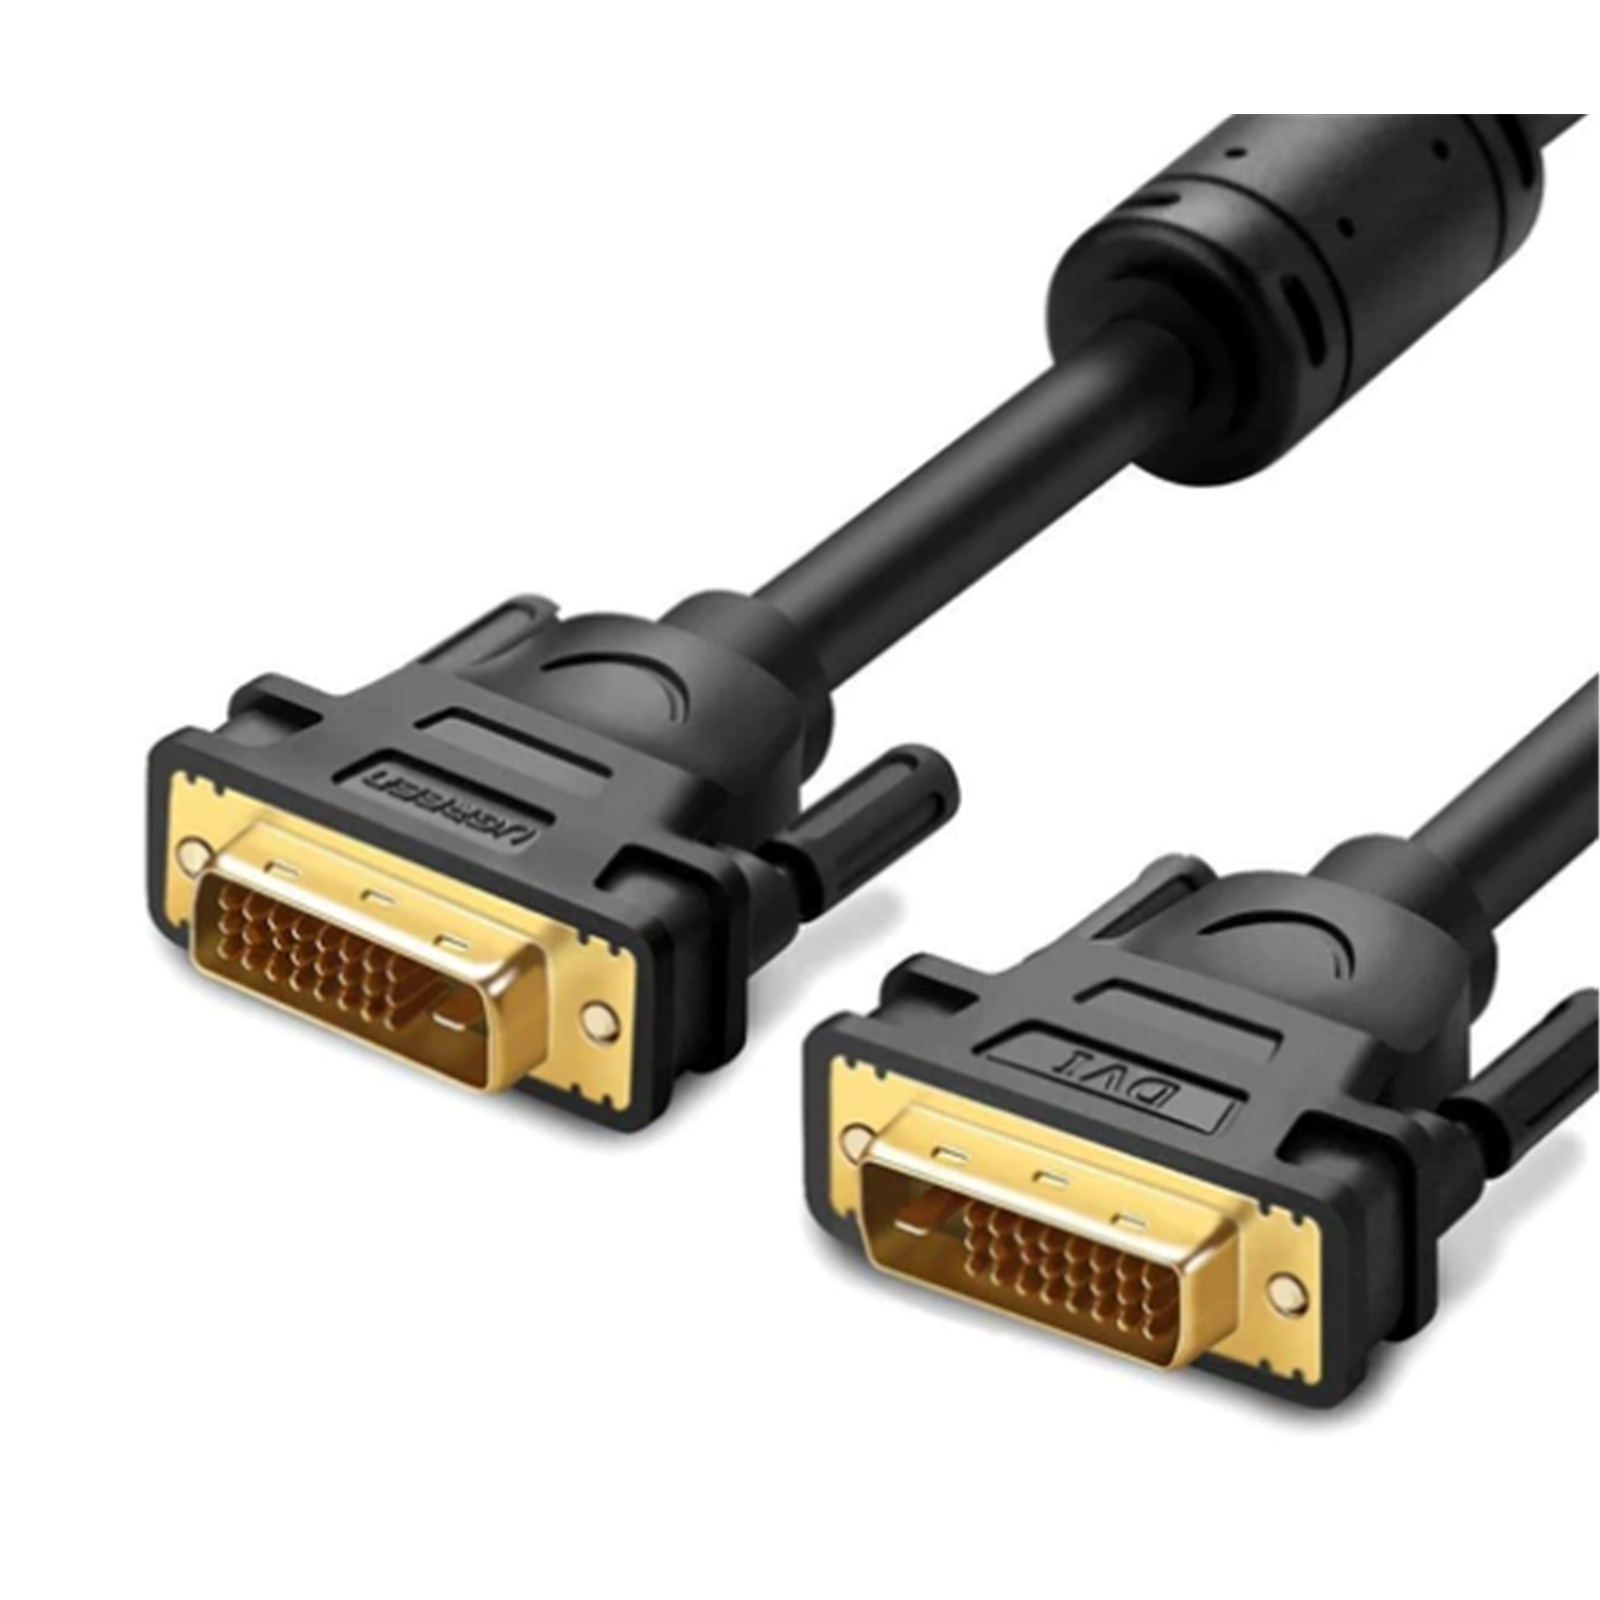 Ugreen UG-11607 DVI to DVI Cable (3m)